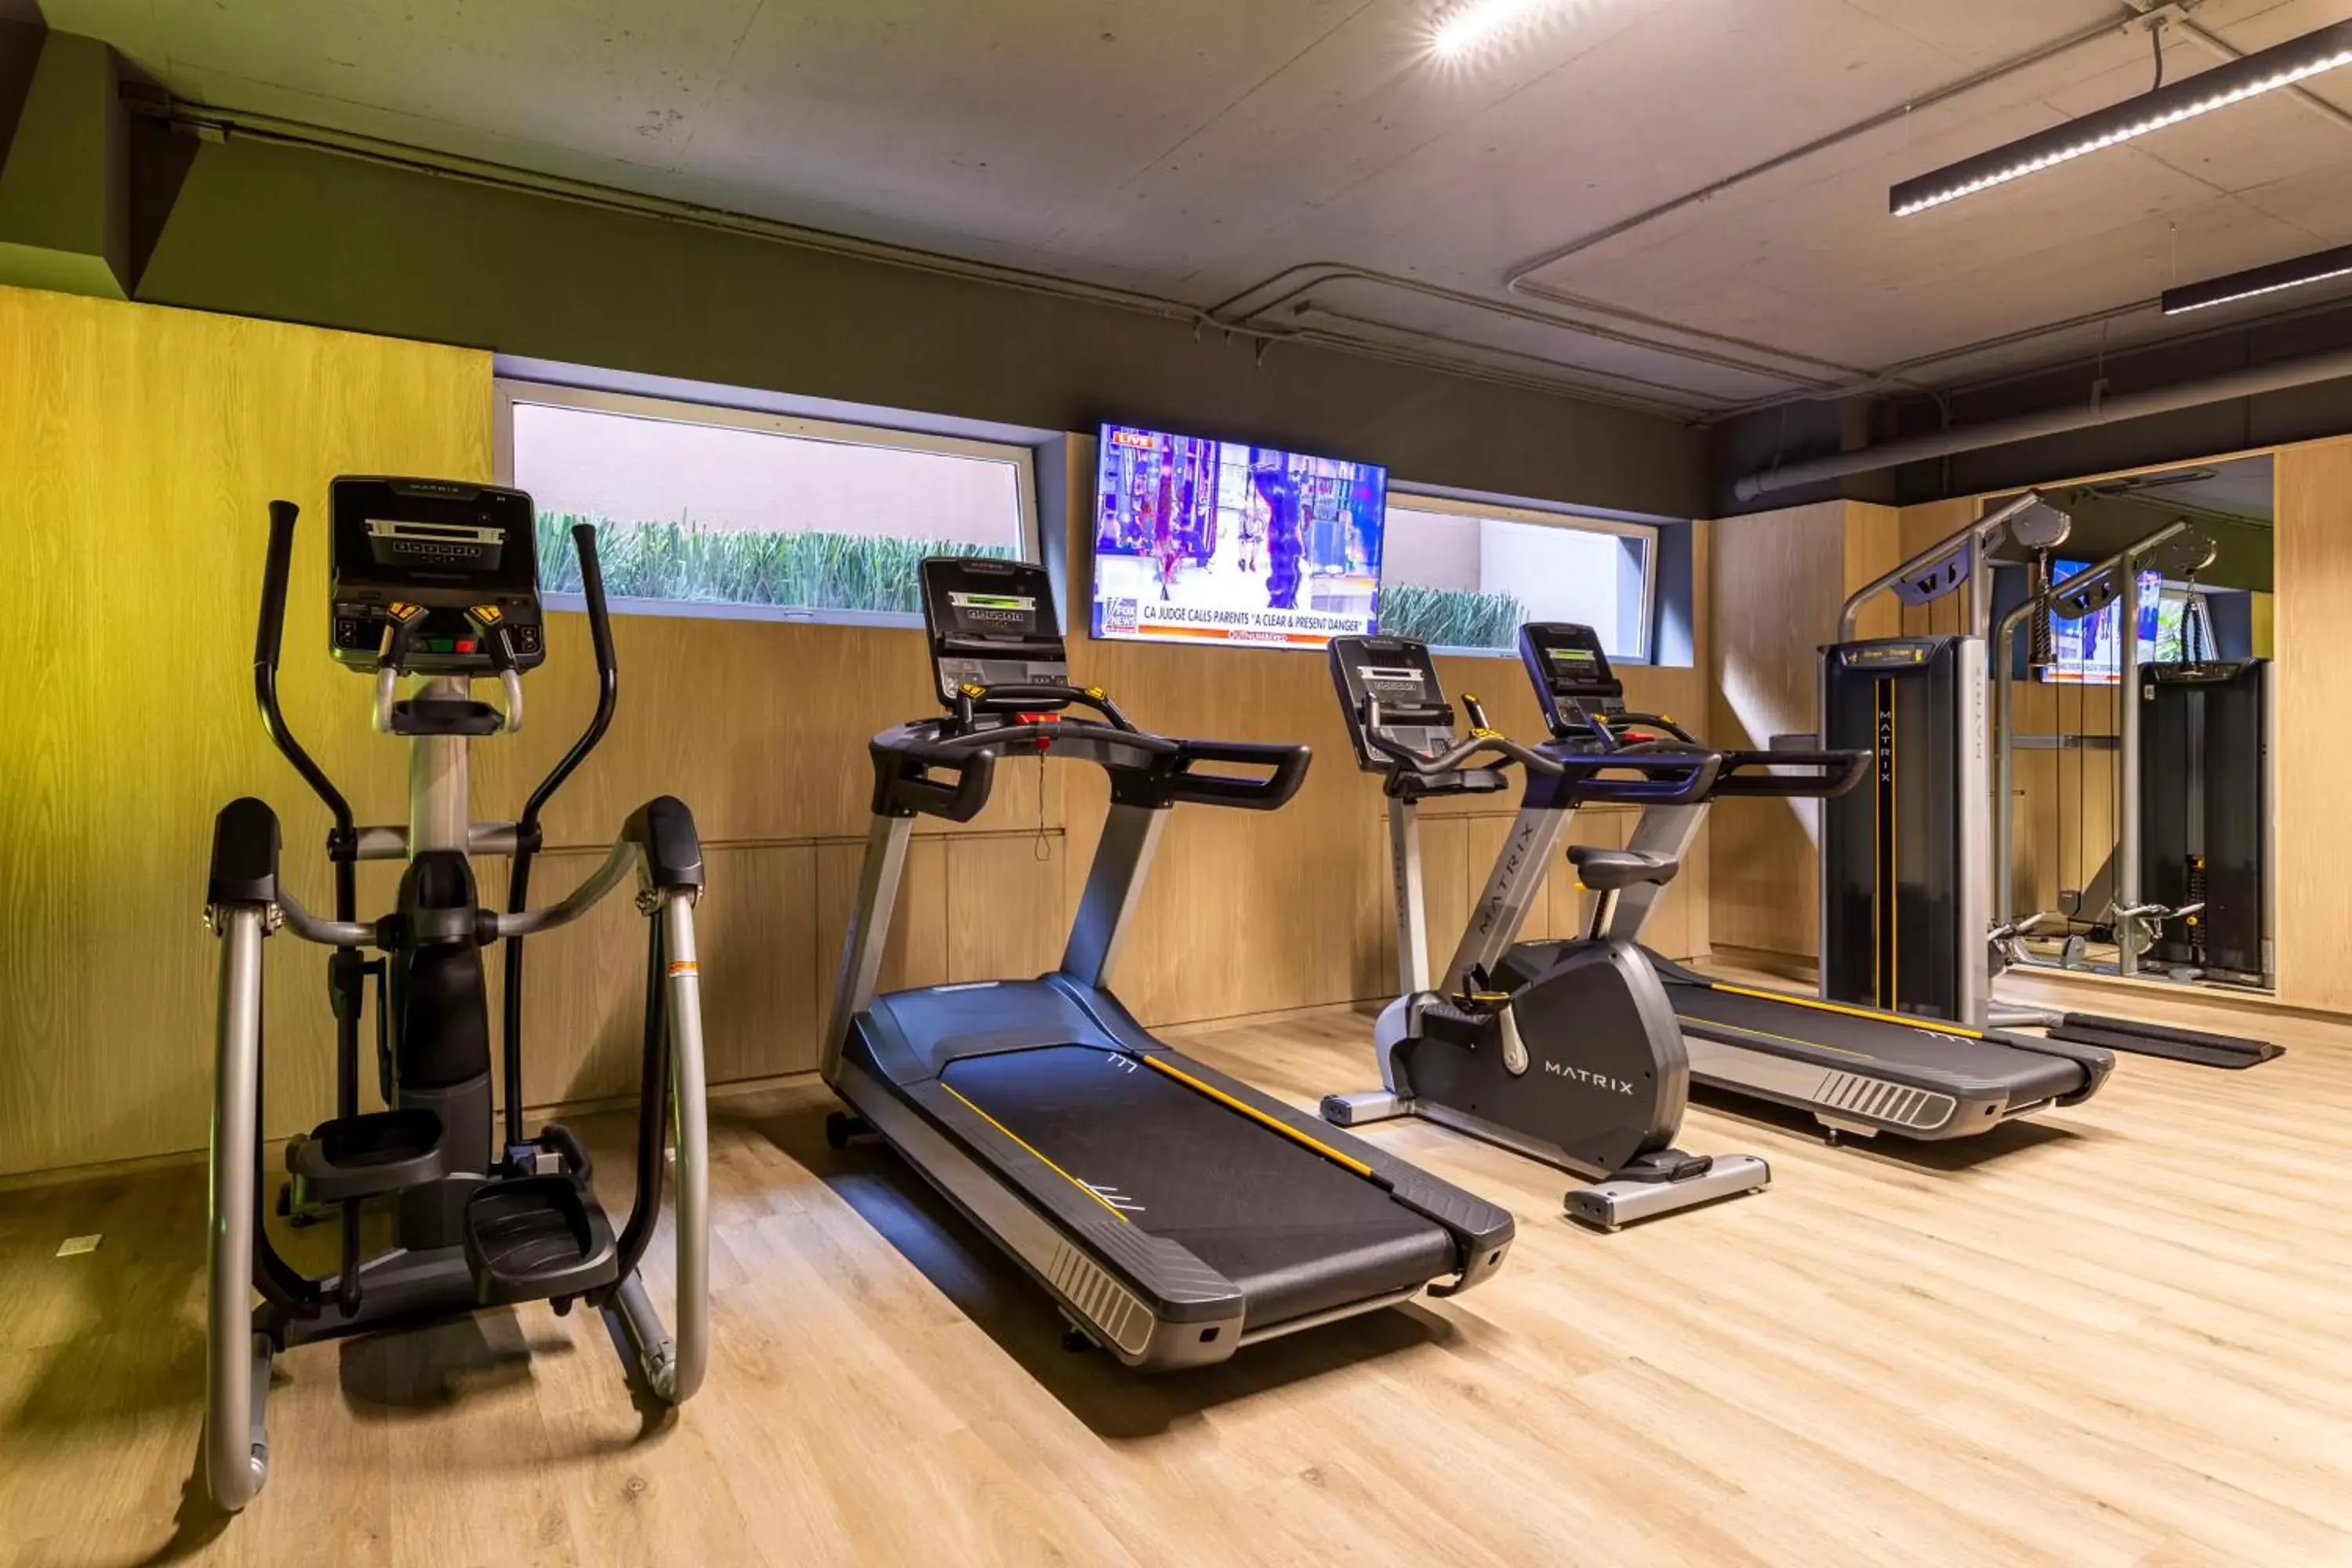 Fitness centre/facilities, Fitness Center/Facilities in Dominion Polanco